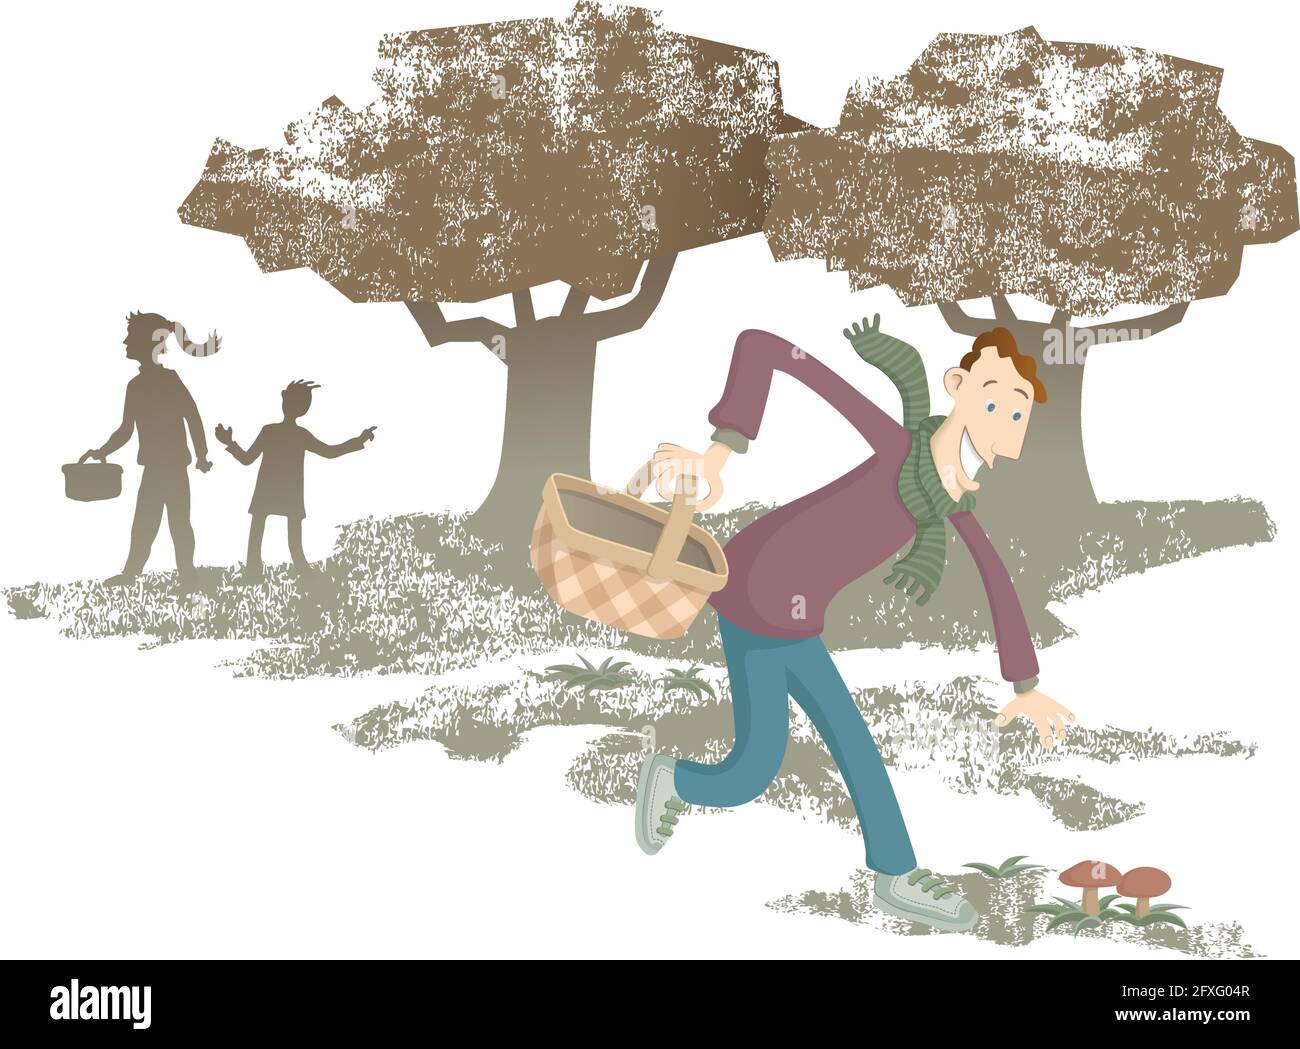 Illustrazione di una famiglia alla ricerca di funghi nel campo. In primo piano, il padre ha appena trovato due splendidi funghi, è molto felice!. Illustrazione Vettoriale